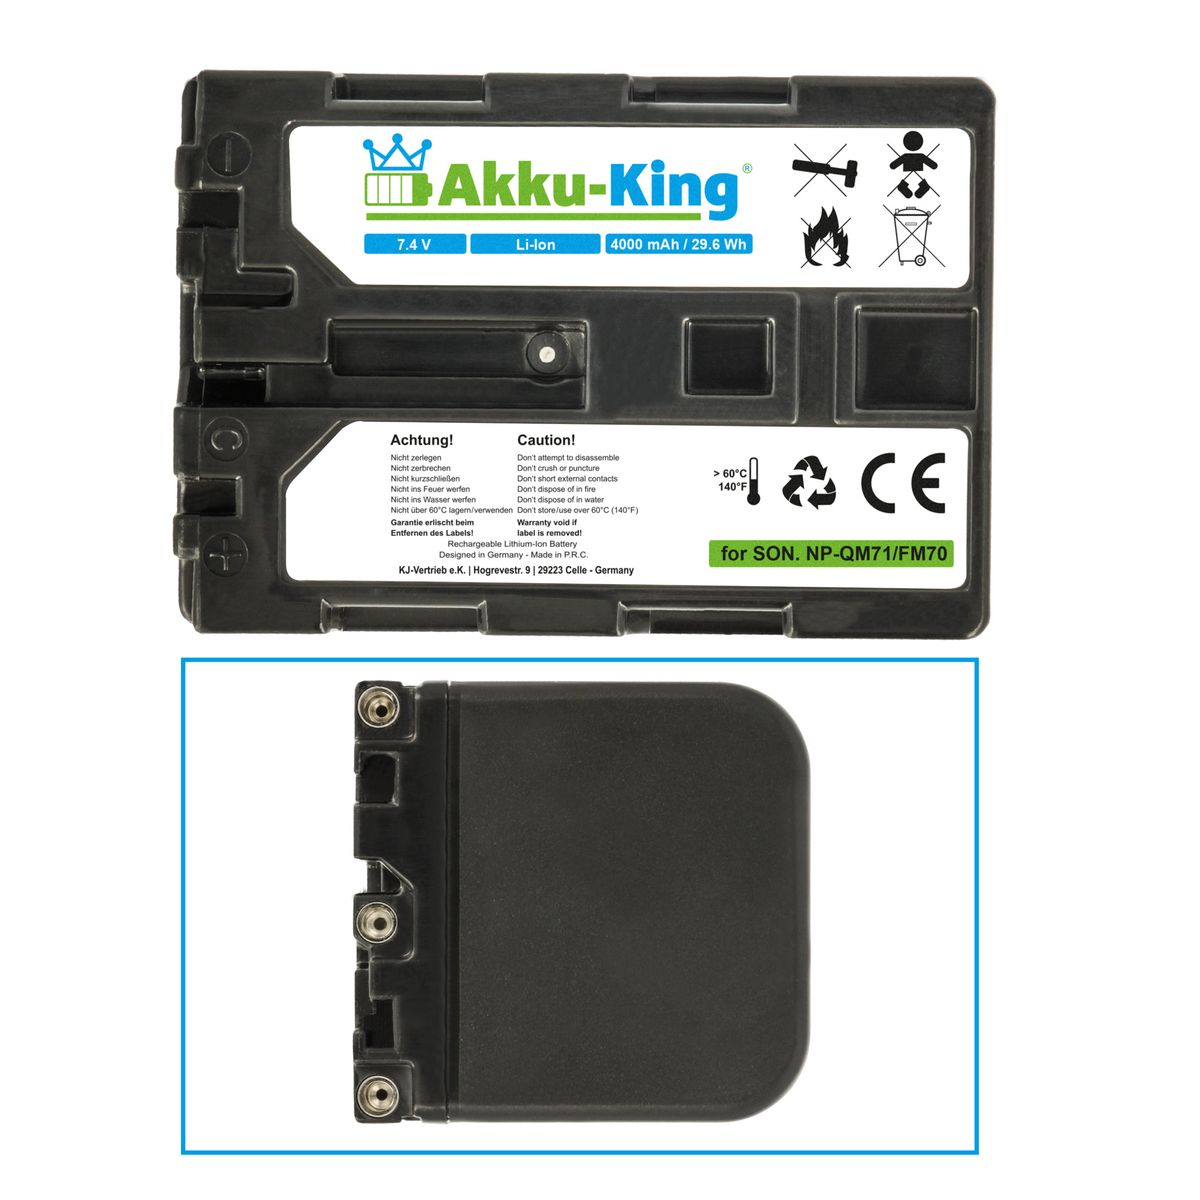 7.4 Kamera-Akku, Sony kompatibel NP-QM71 Akku Volt, 4000mAh Li-Ion mit AKKU-KING